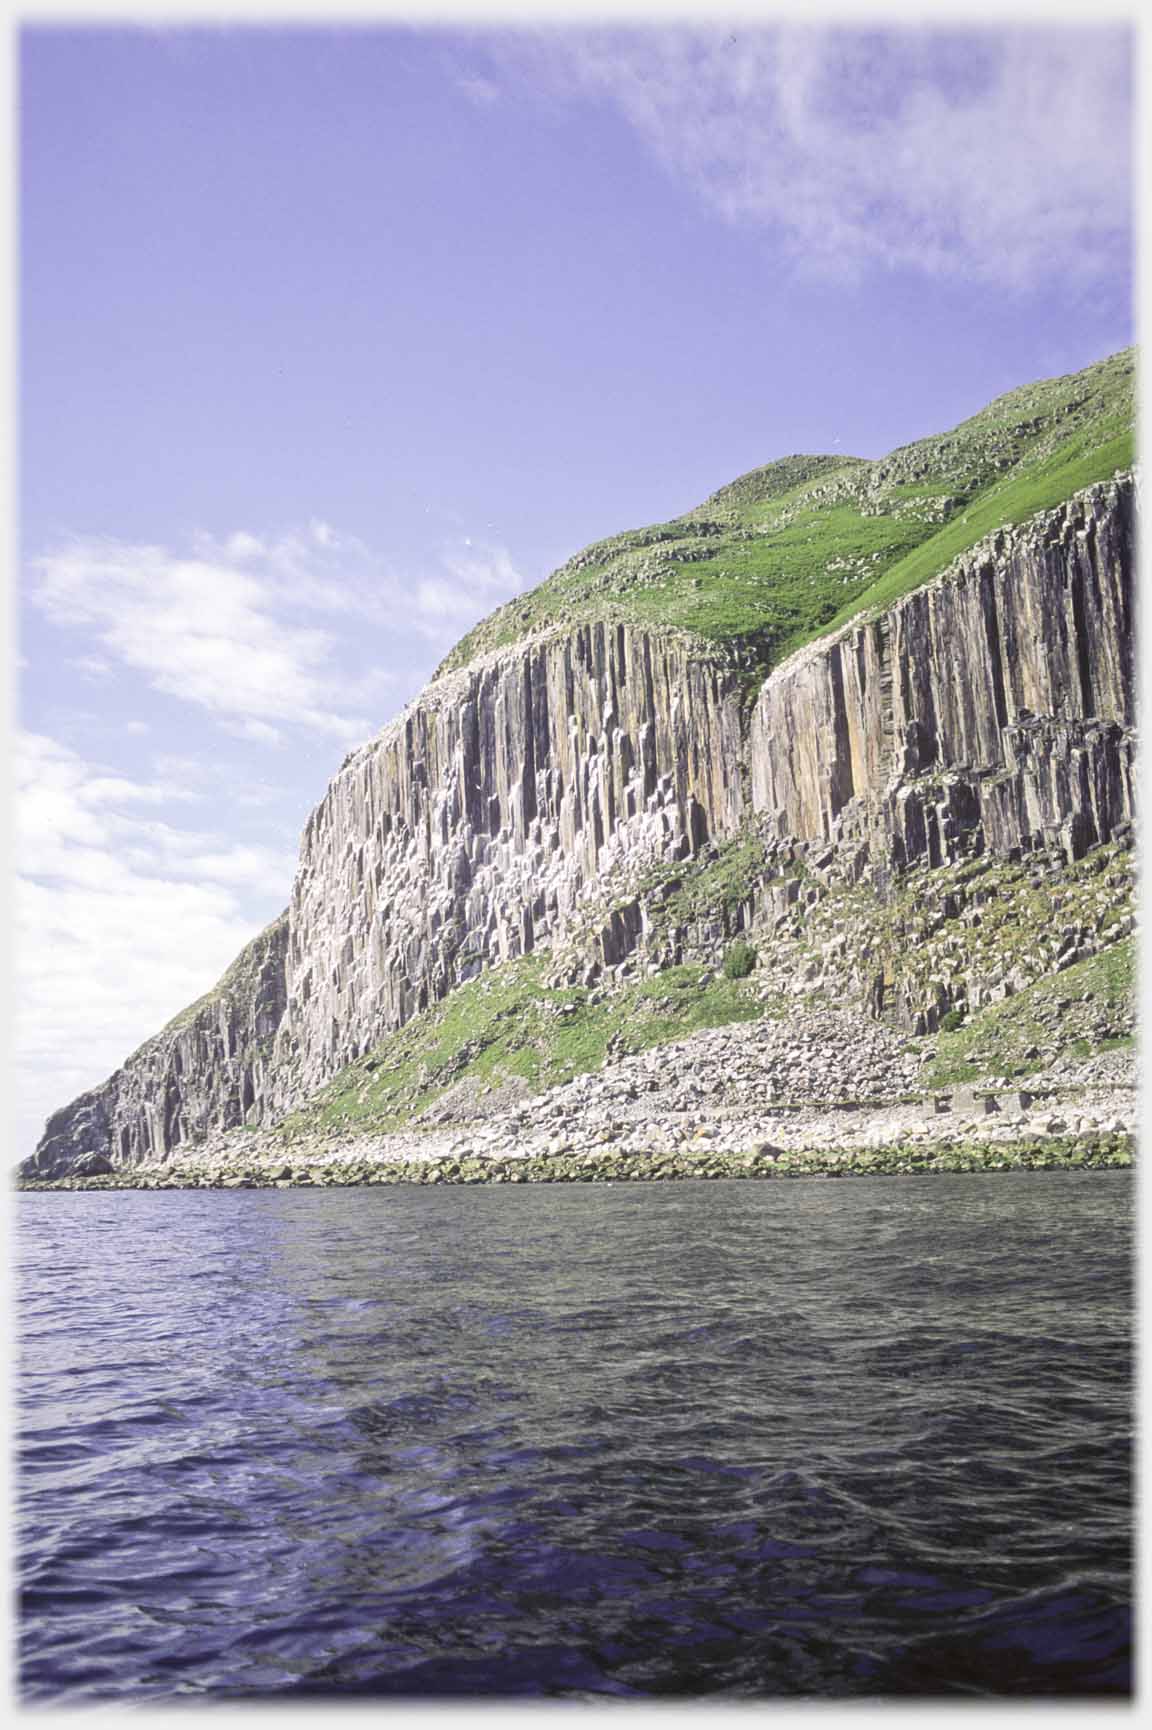 Cliffs seen from sea.